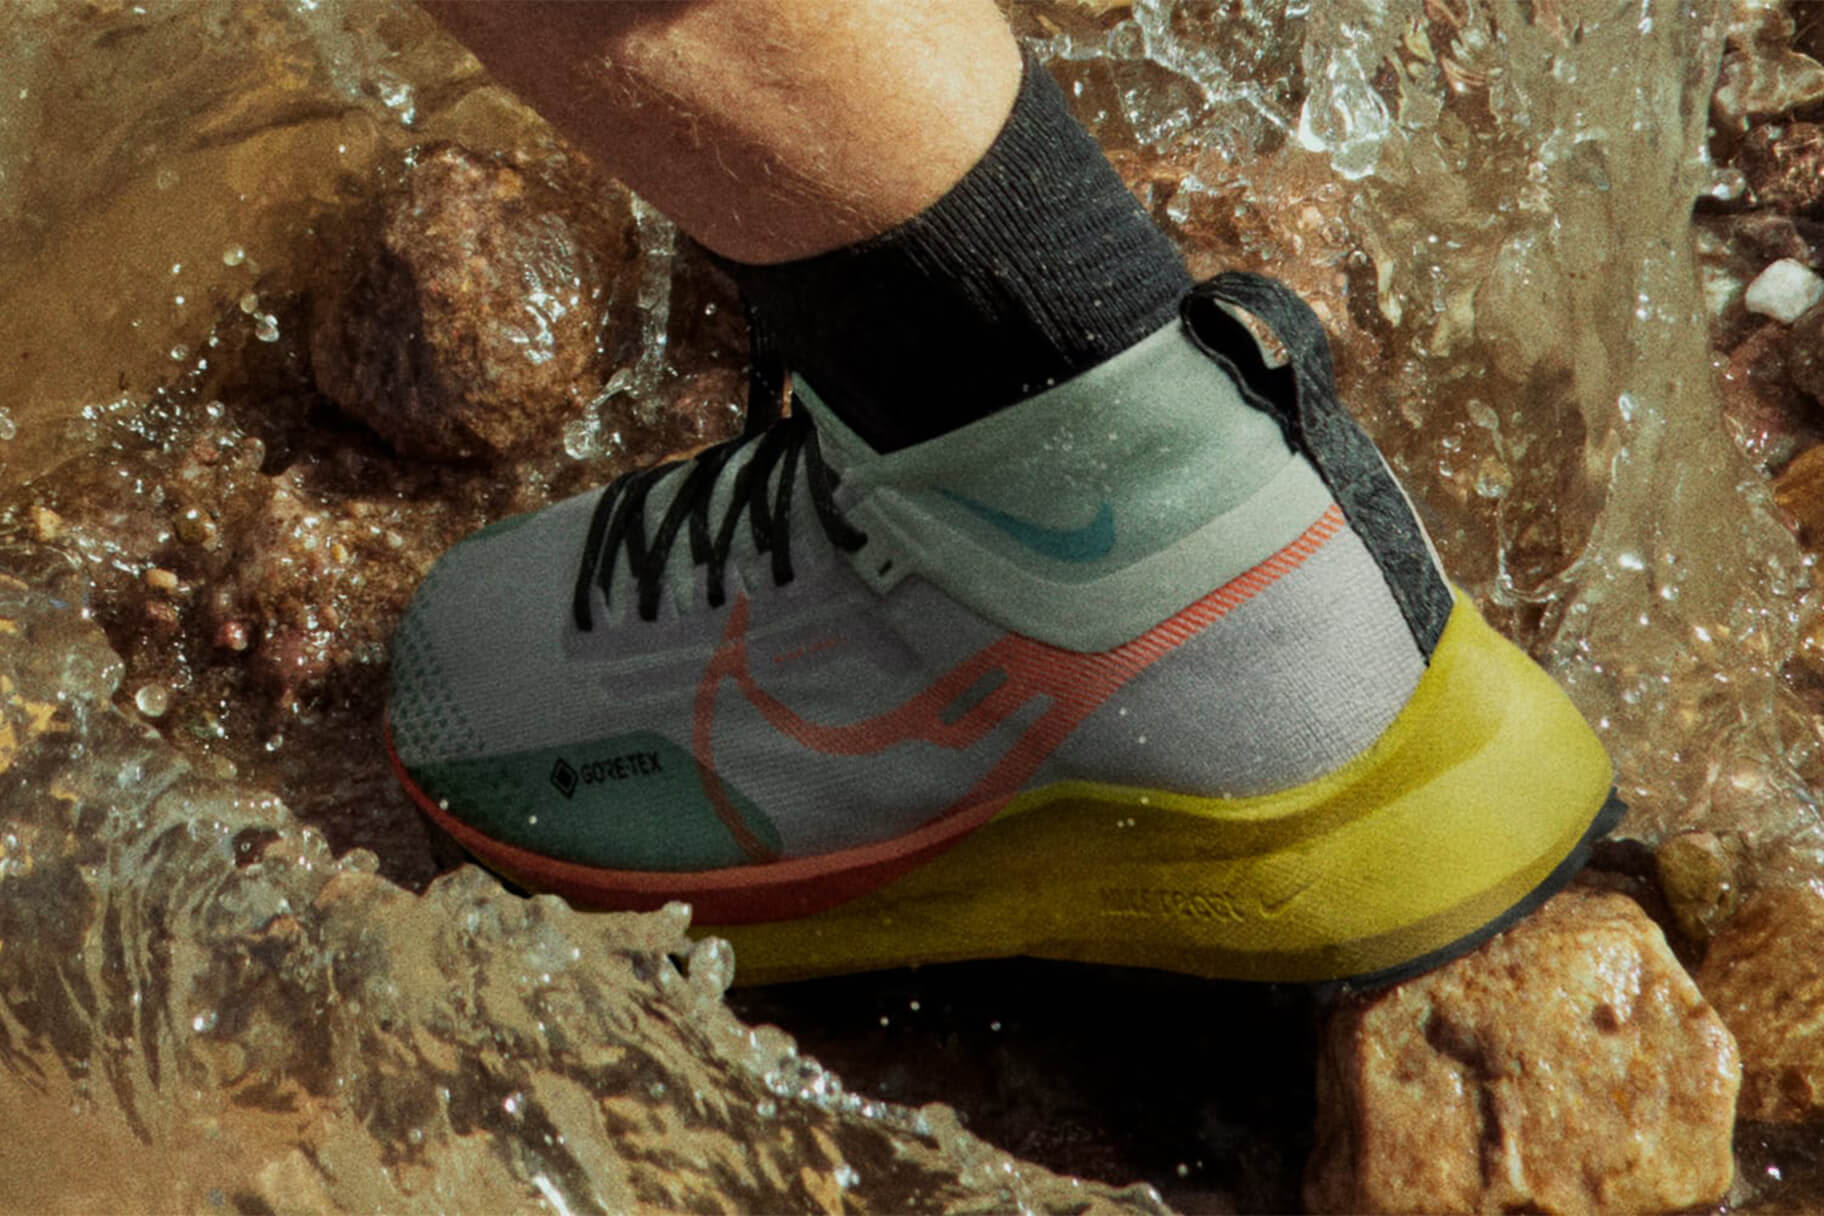 Calzado de running impermeable Nike para entrenamientos en condiciones húmedas